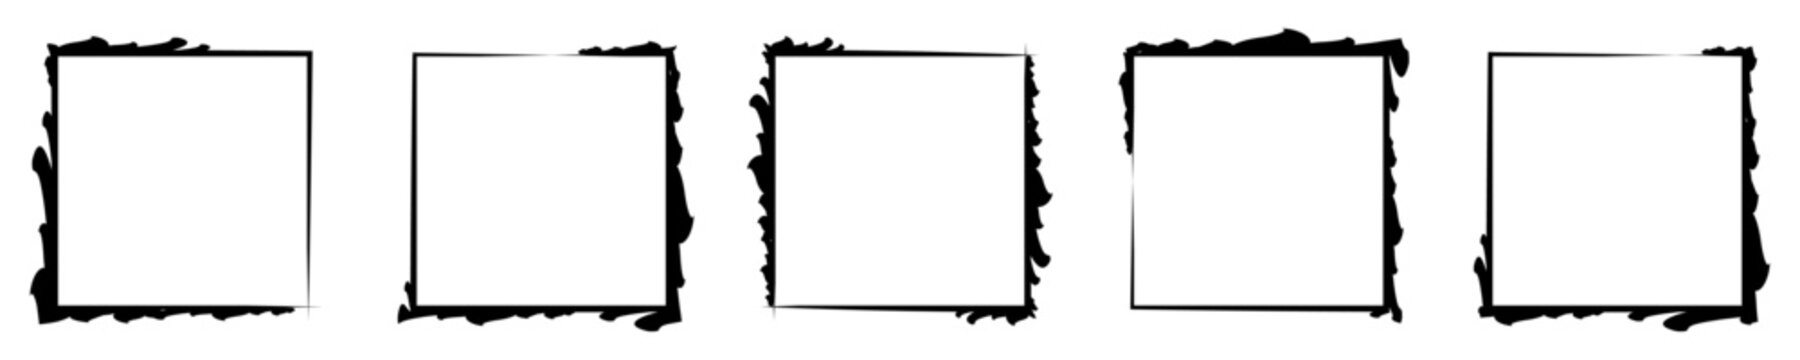 Grunge brush outline frames collection. Hand drawn sketch frame set.